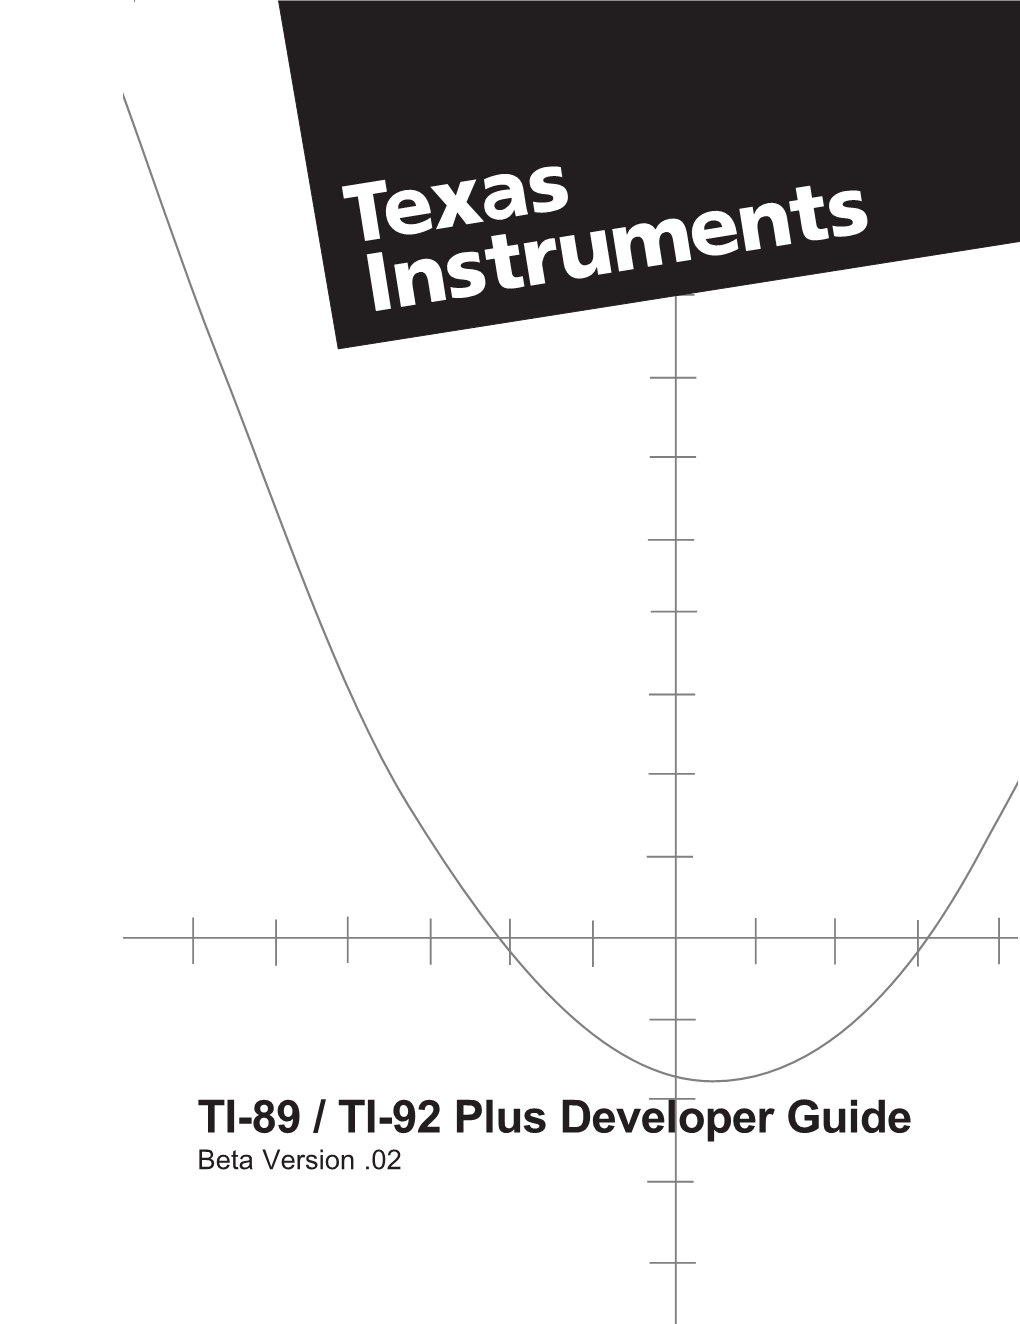 TI-89 / TI-92 Plus Developer Guide Beta Version .02